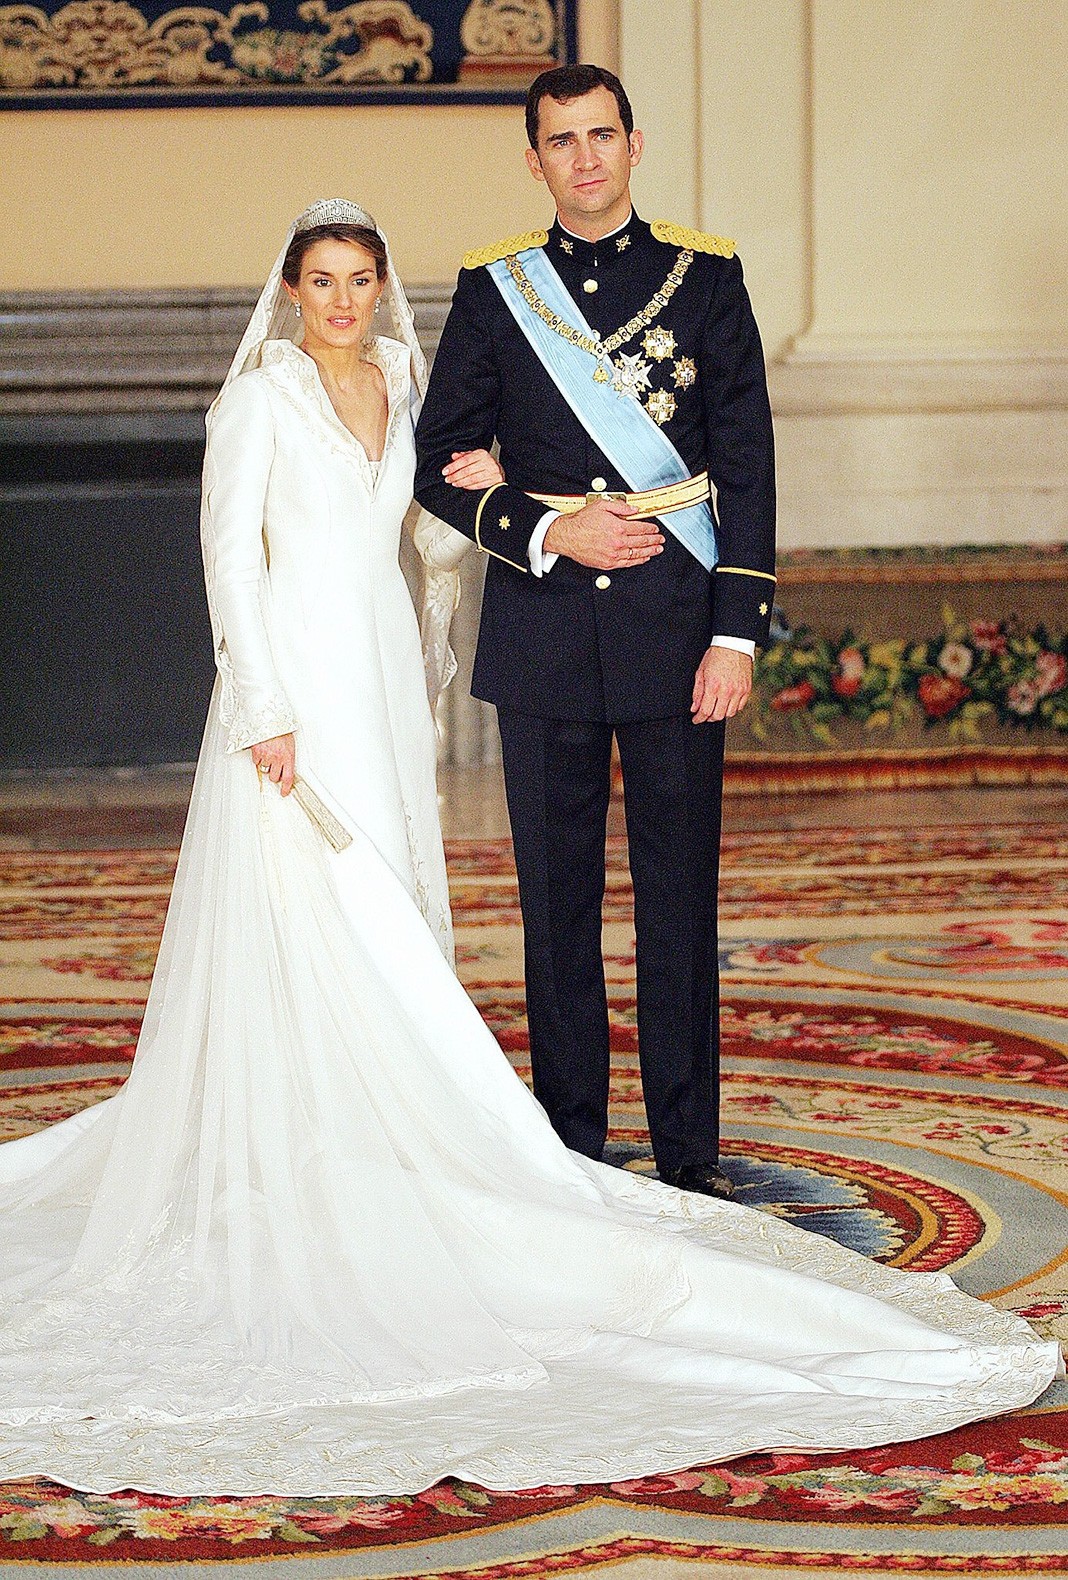 Свадьба Королевы Летиции и принца Астурийского Филиппа в кафедральном соборе Санта-Мария ла Реаль де ла Альмудена в Мадриде, 22 мая 2004 г.